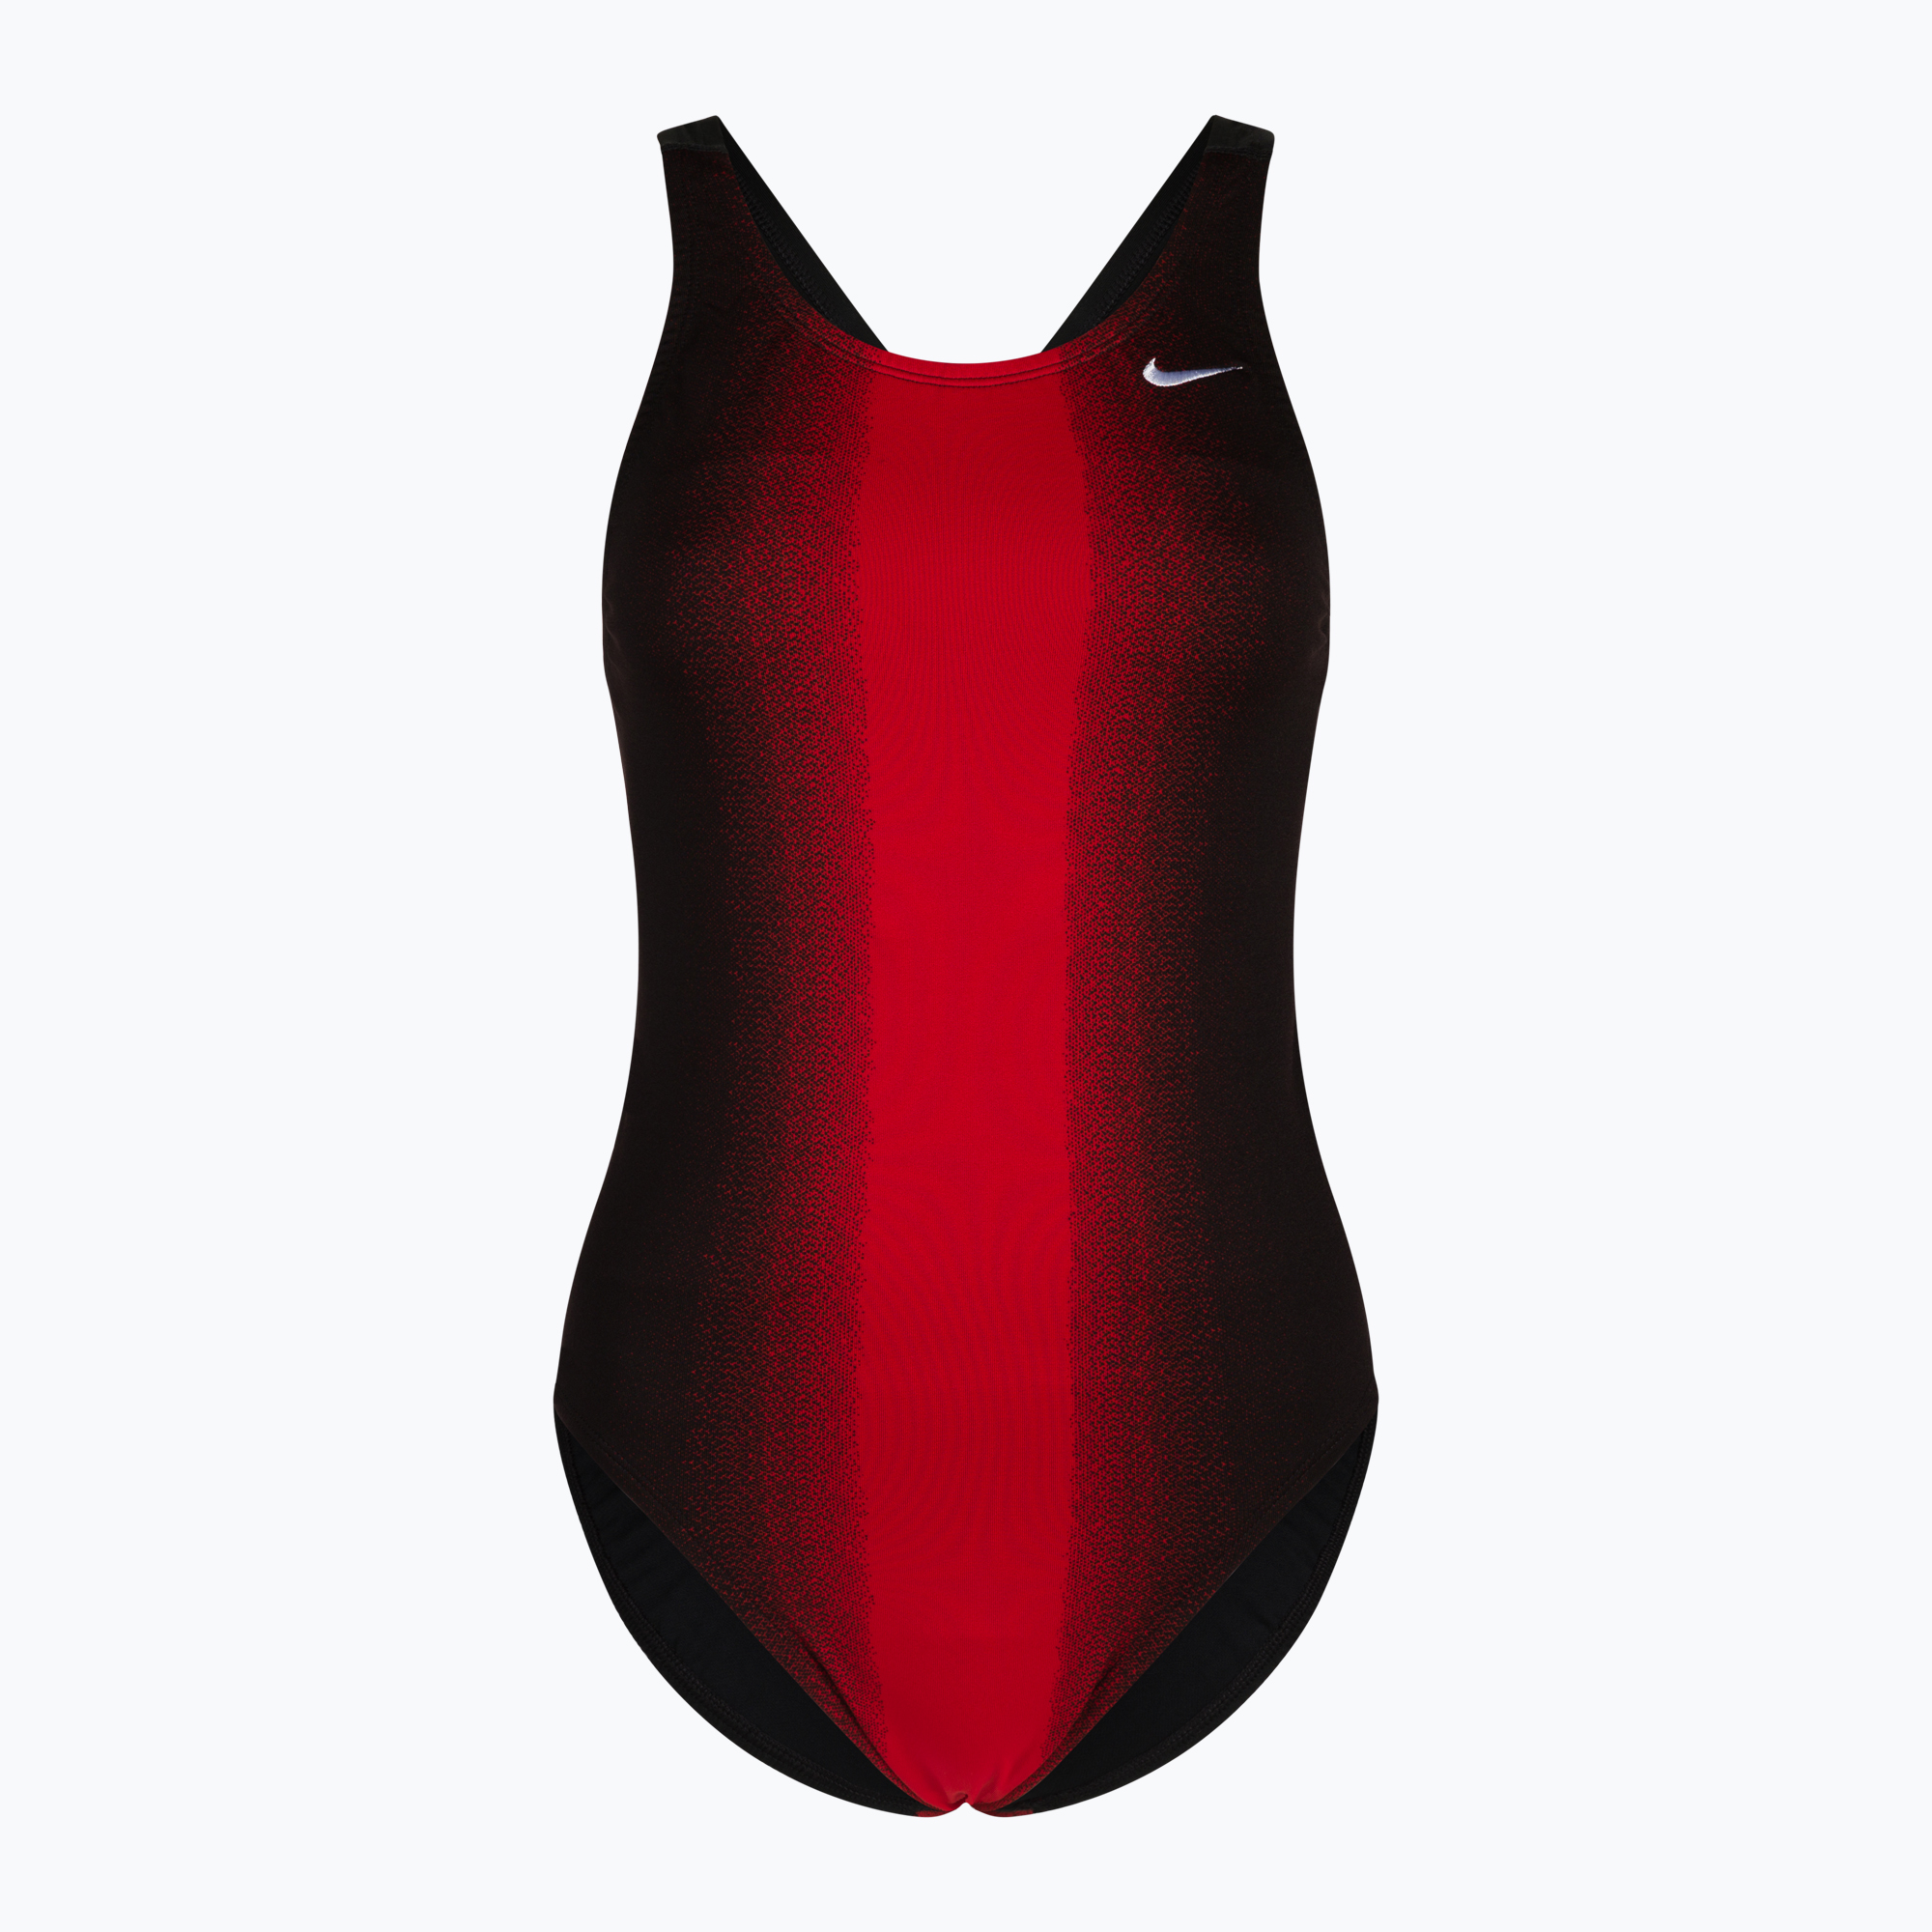 Дамски бански костюм от една част Nike Fade Sting черен и червен NESS8050-614